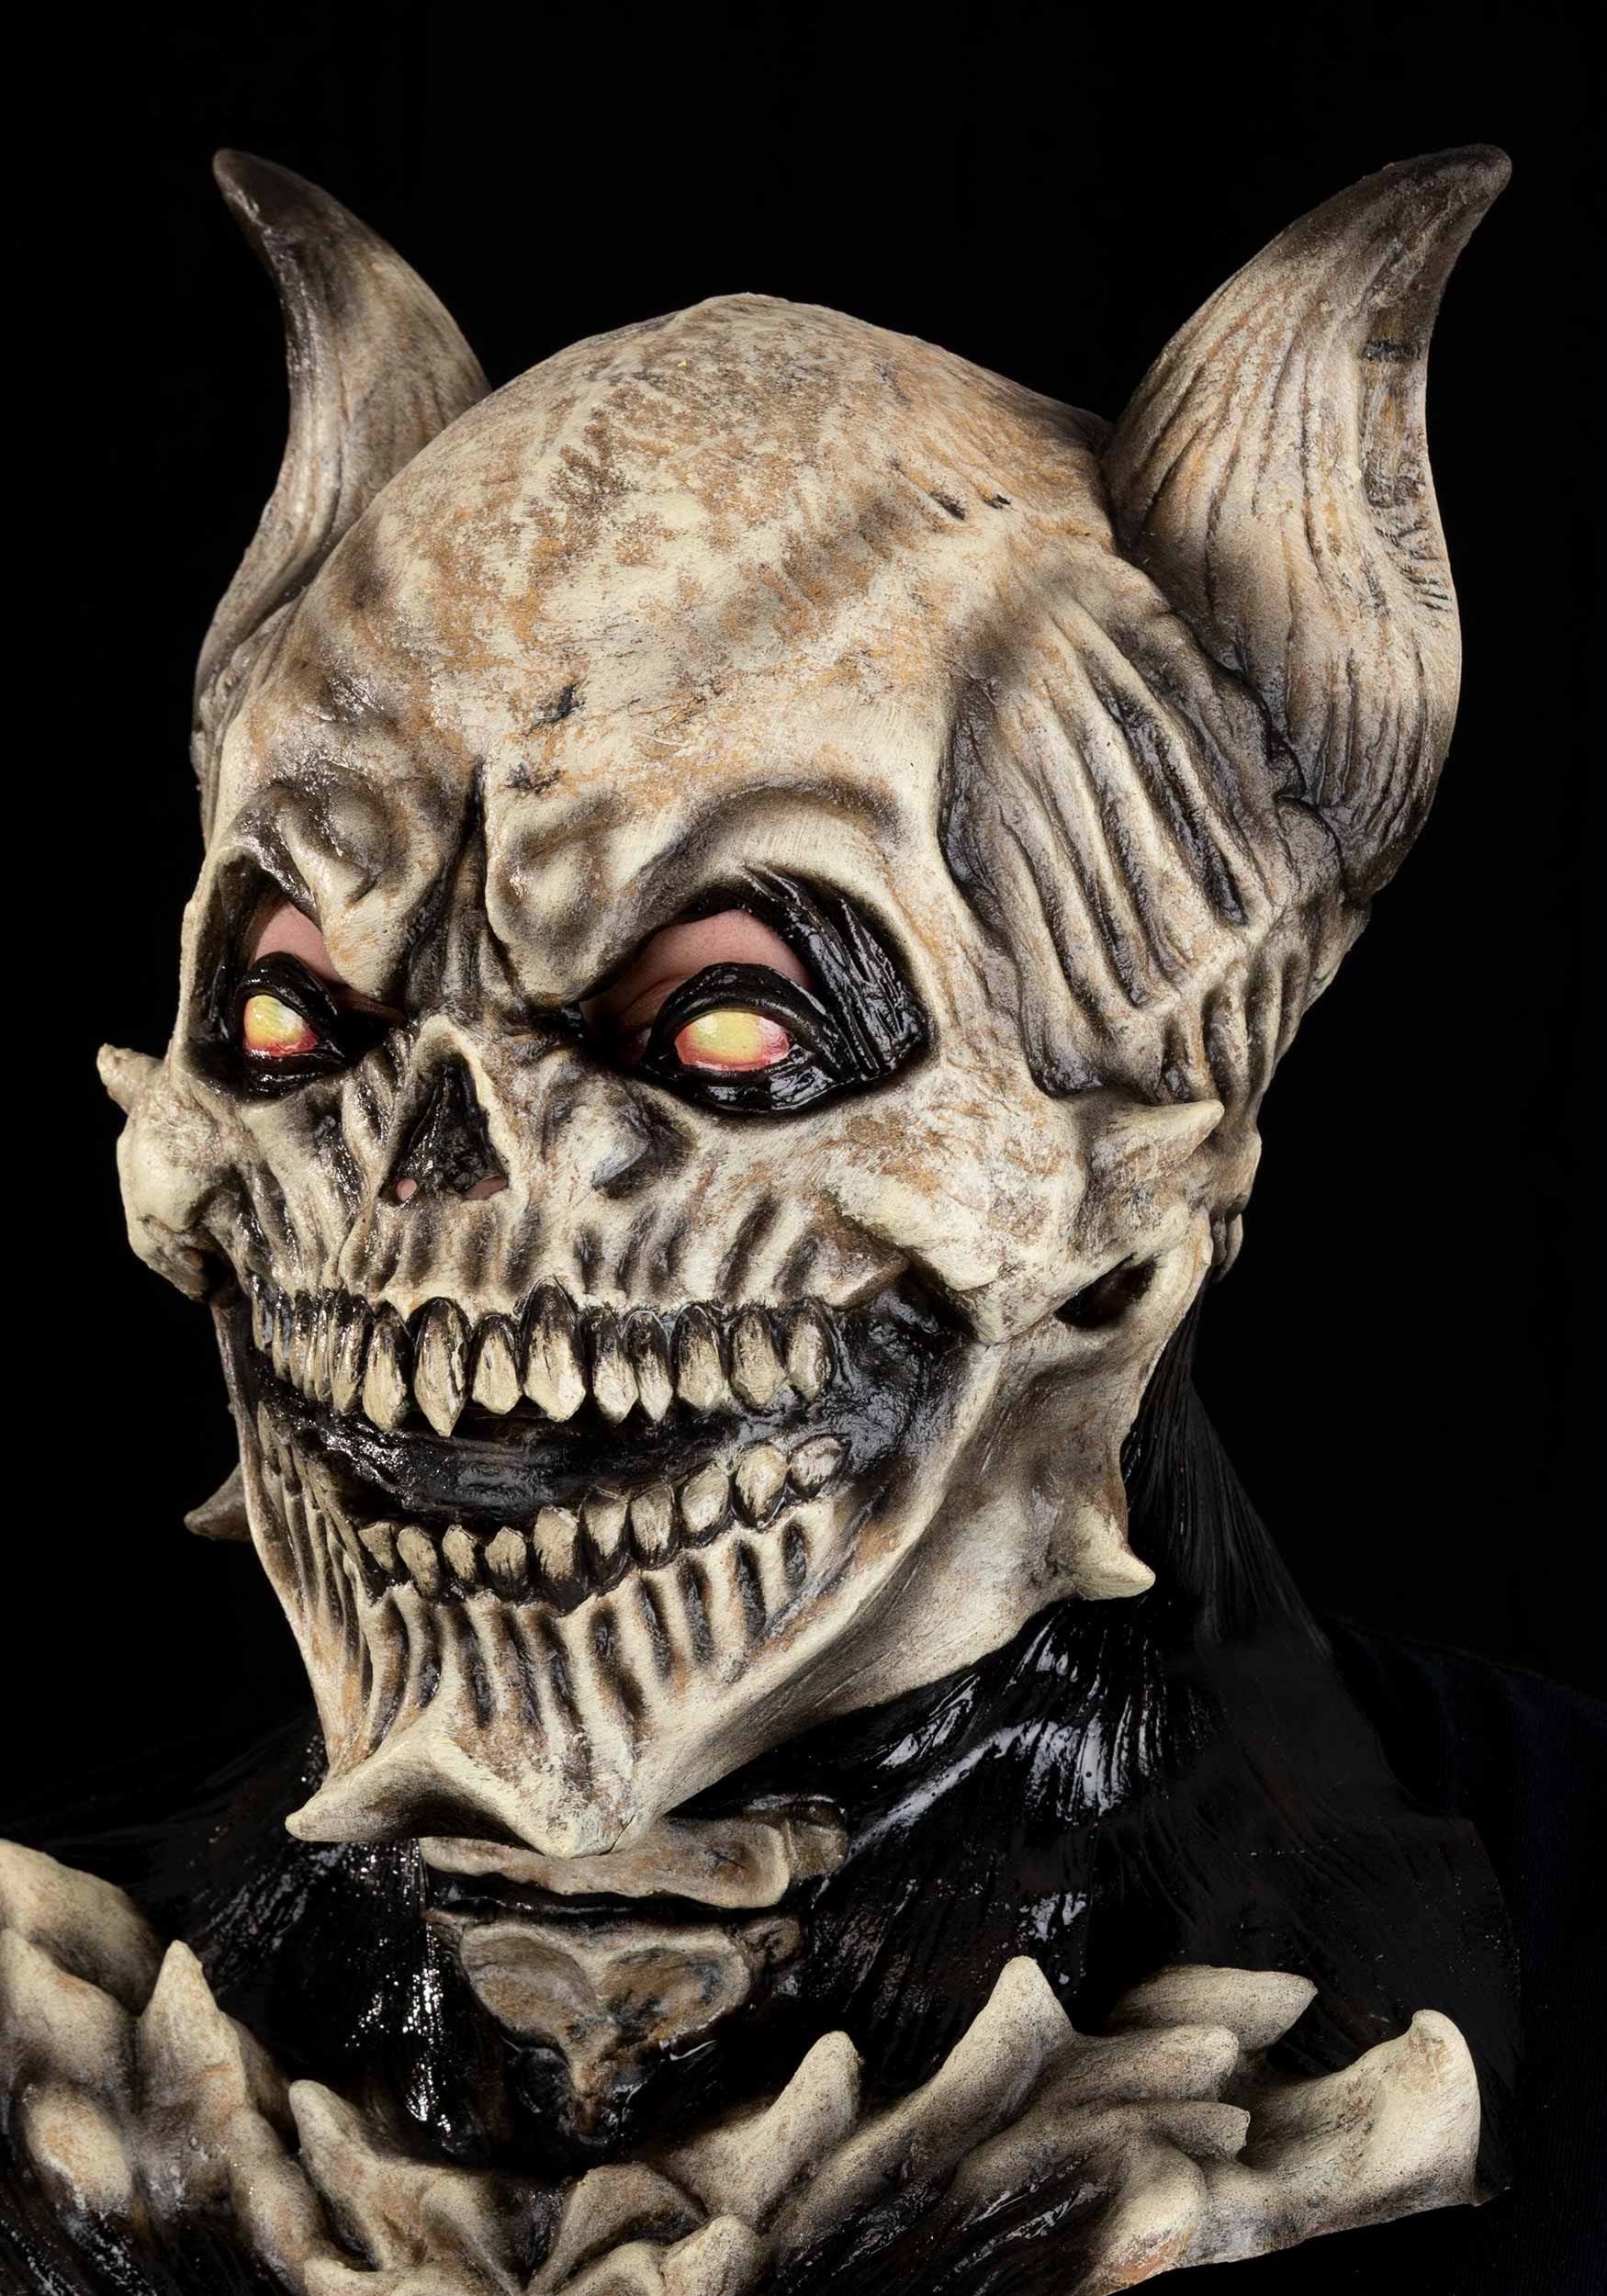 Adult Deathkeeper Ocher Mask